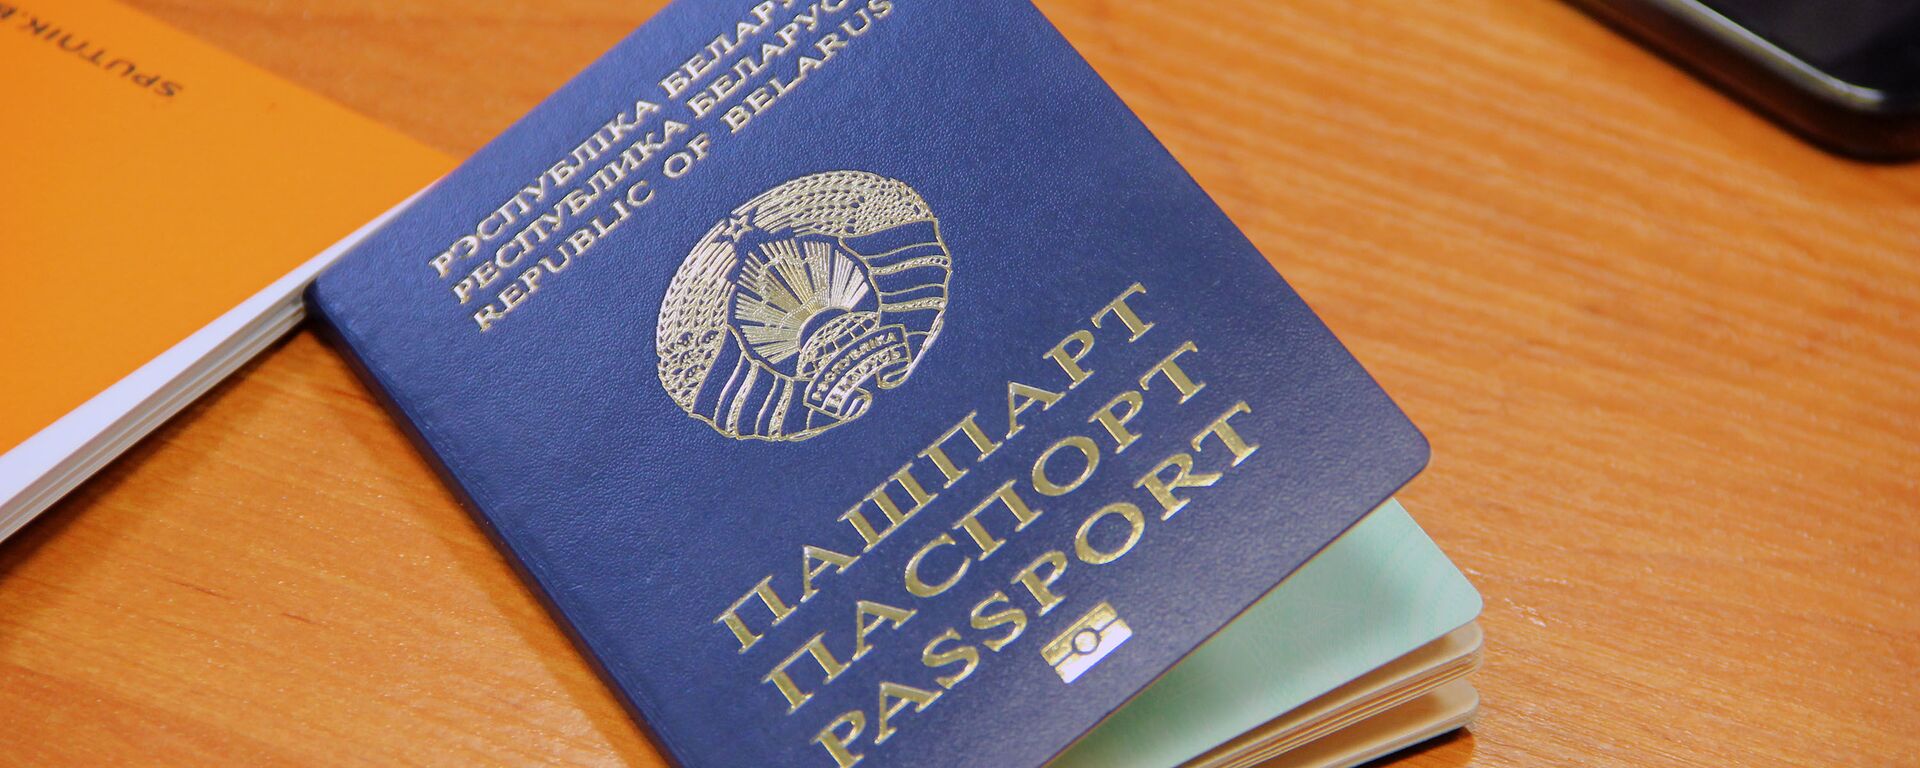 Биометрический паспорт - Sputnik Беларусь, 1920, 18.03.2021